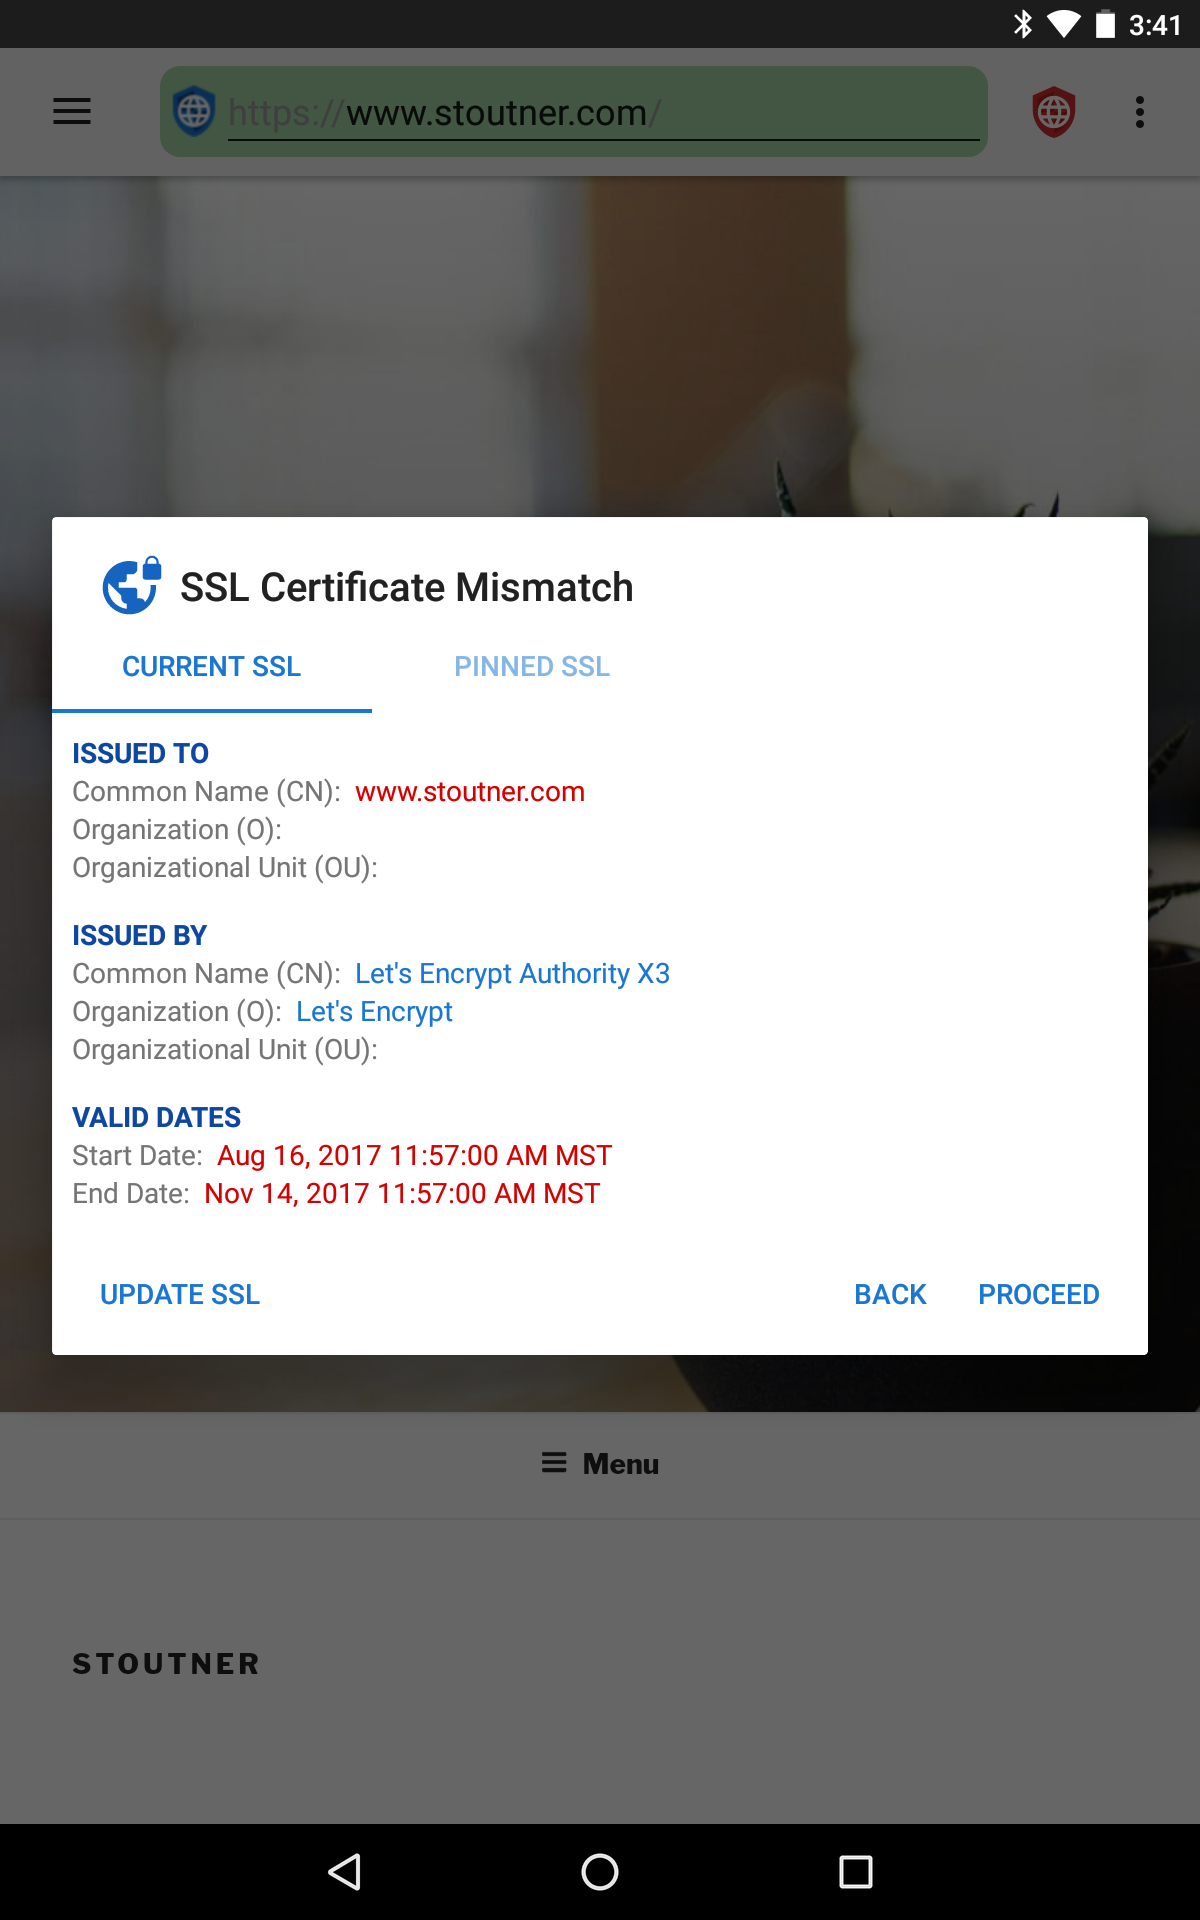 fastlane/metadata/android/en/sevenInchScreenshots/02 - SSL Certificate Mismatch.png